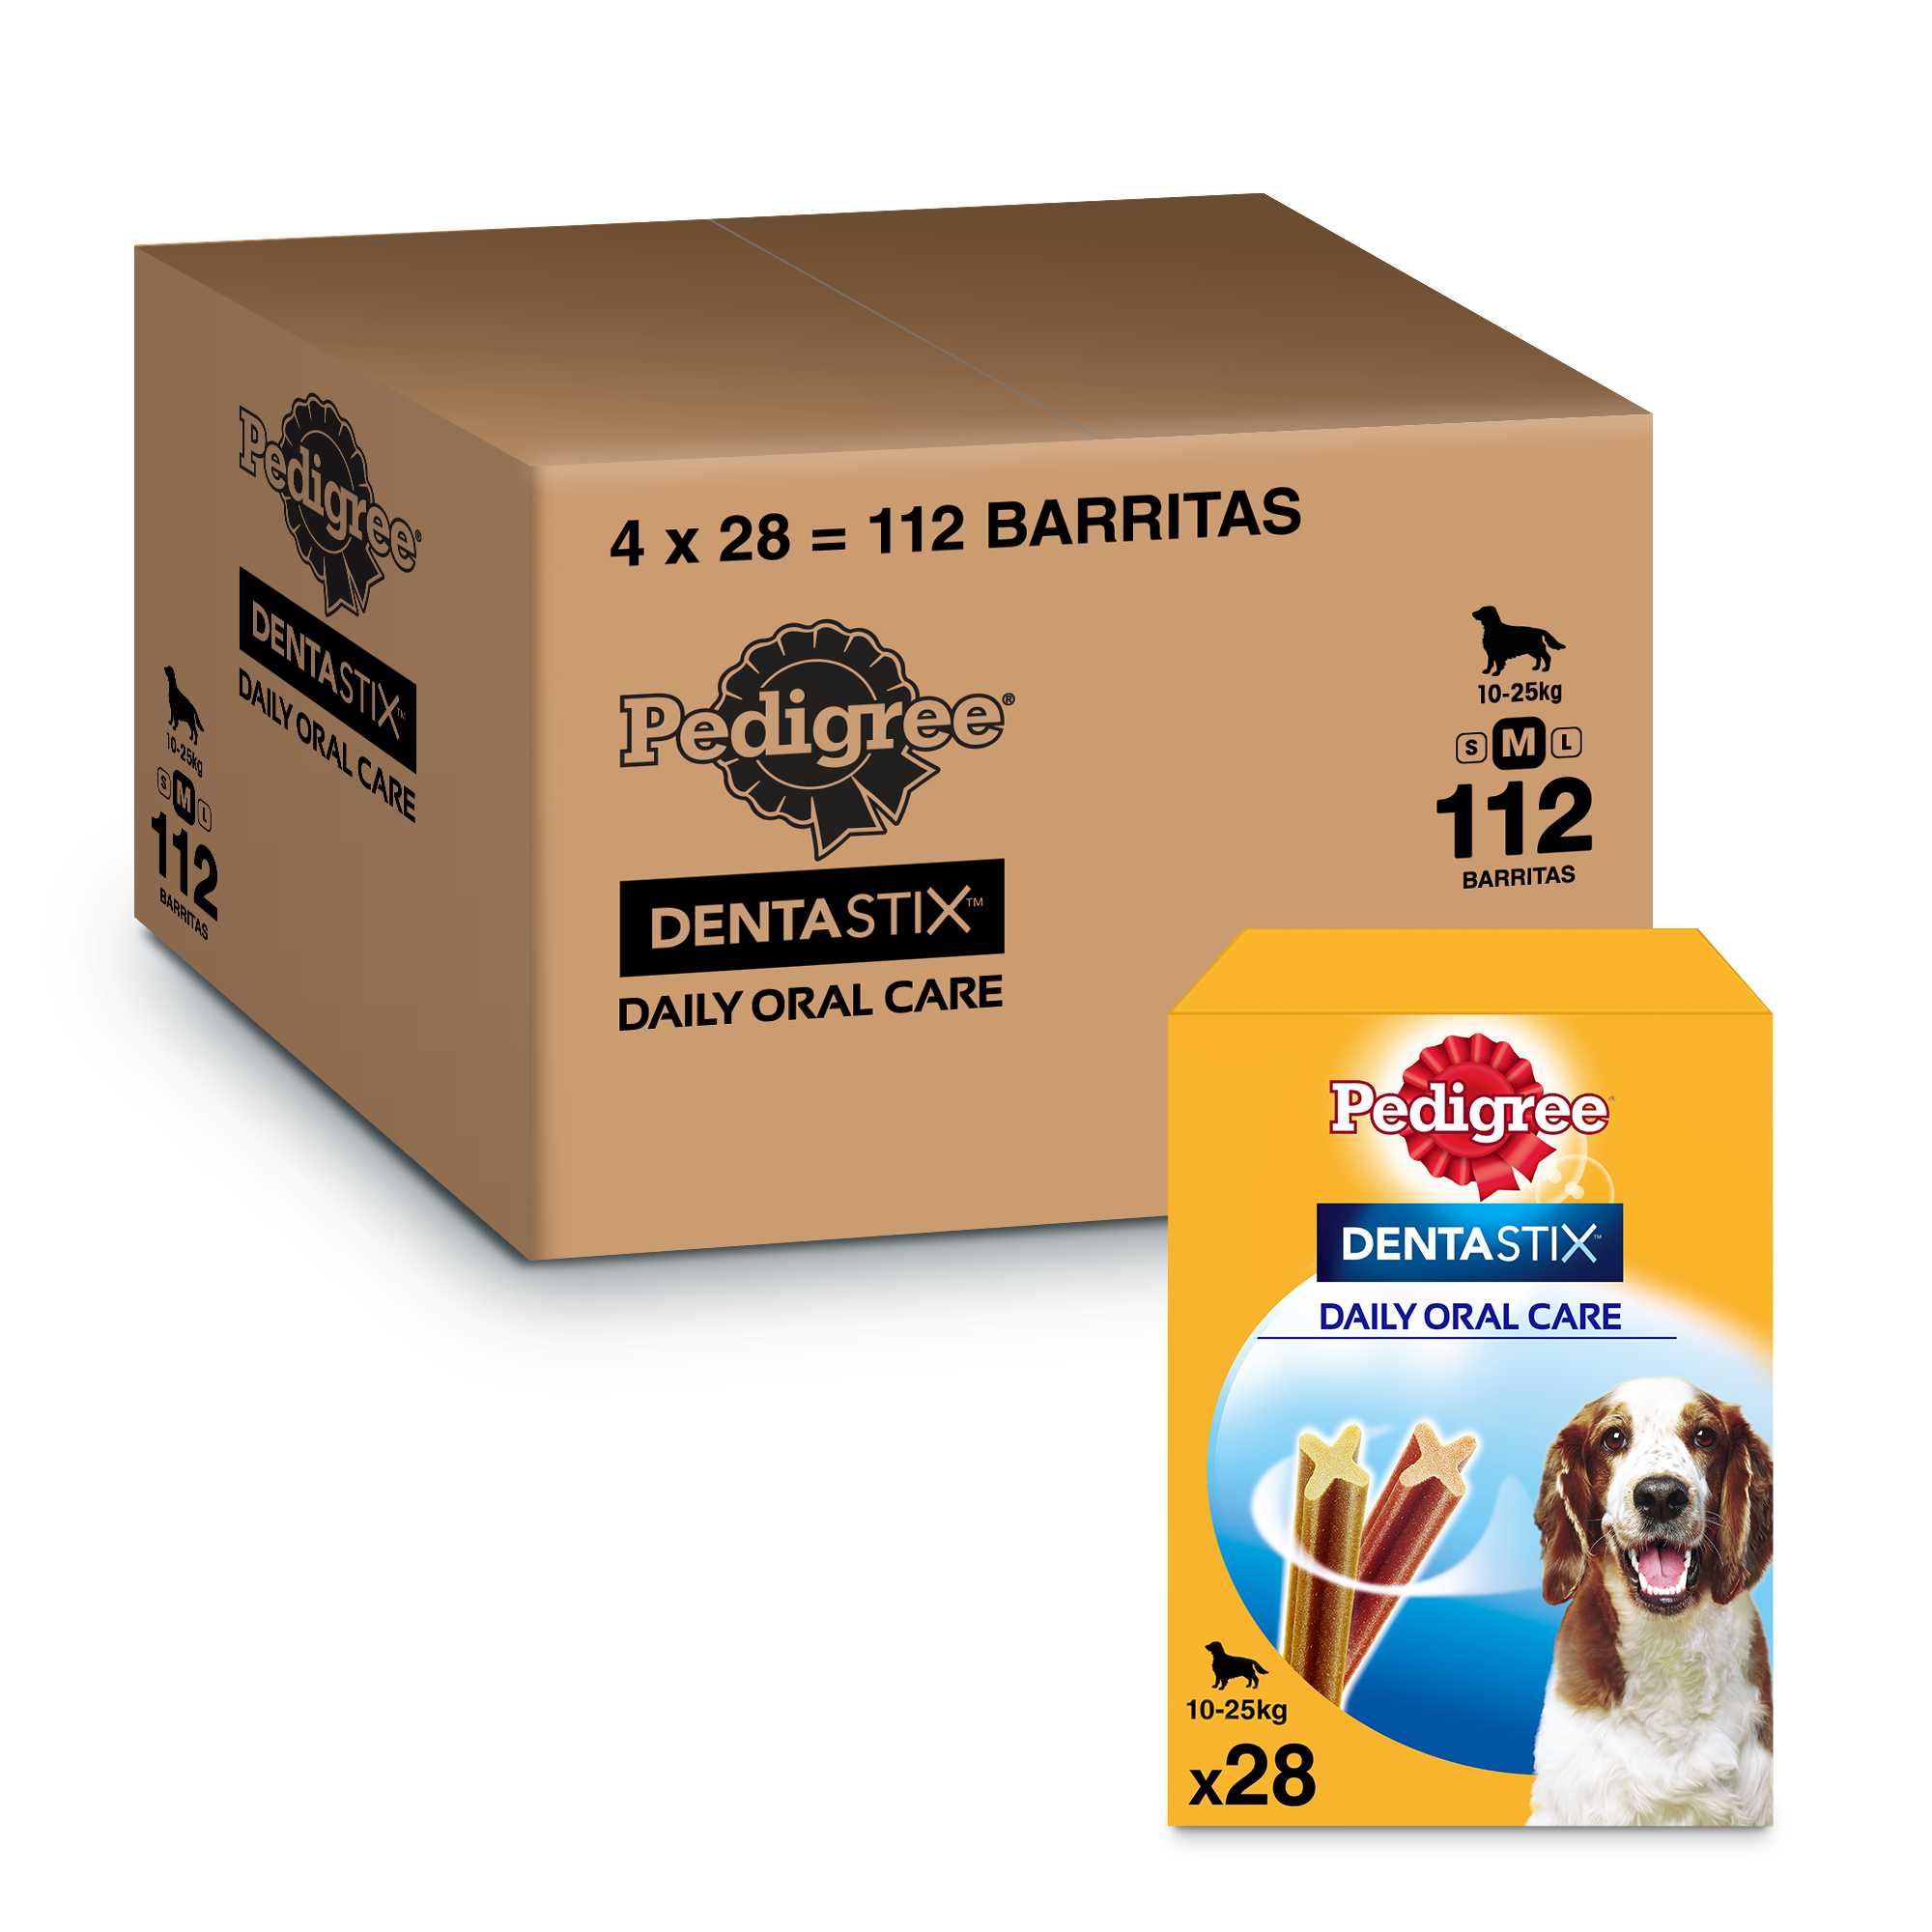 Pack de 112 barritas Dentastix de Pedigree para perros medianos por sólo 24,64€ ¡¡47% de descuento!!